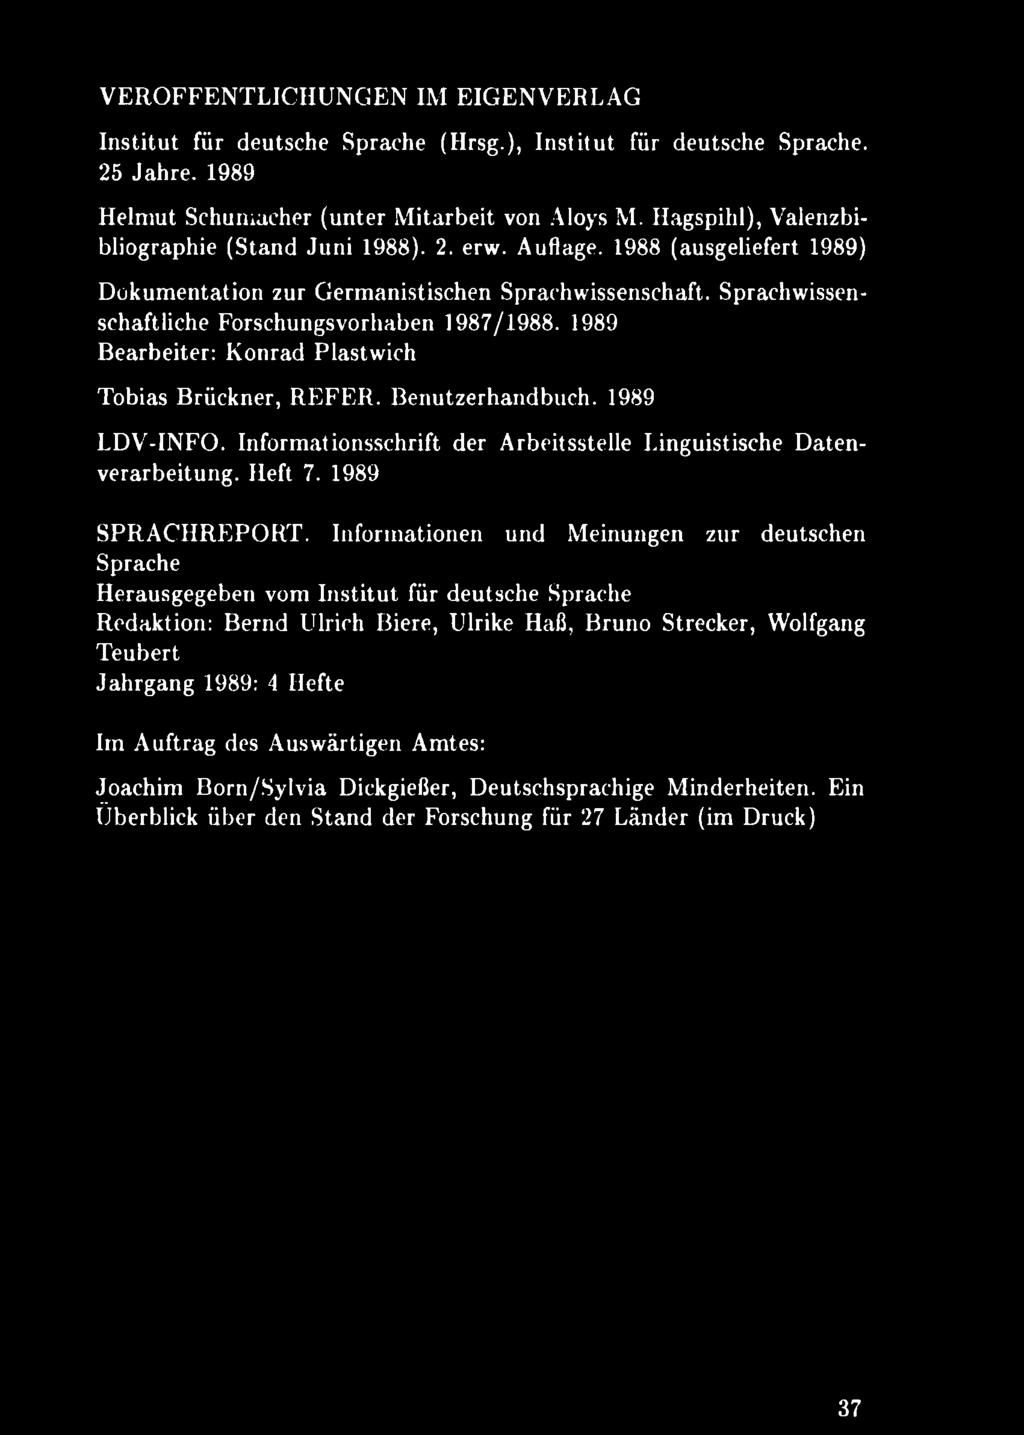 1989 Bearbeiter: Konrad Plastwich Tobias Brückner, REFER. Benutzerhandbuch. 1989 LDV-INFO. Informationsschrift der Arbeitsstelle Linguistische Datenverarbeitung. Heft 7. 1989 SPRACHREPORT.